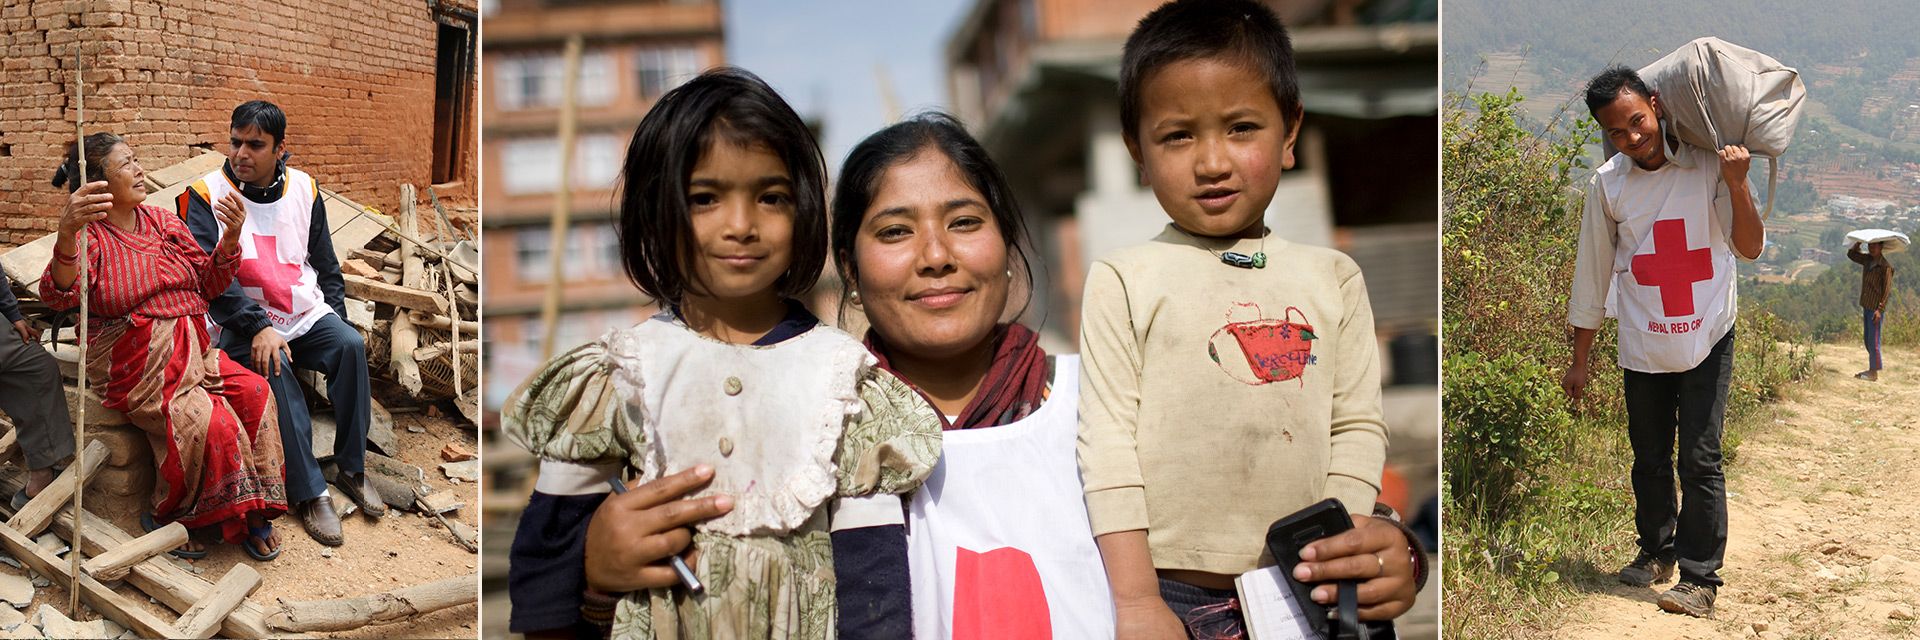 Nepal Hilfe: Rotkreuzhelfer in Nepal